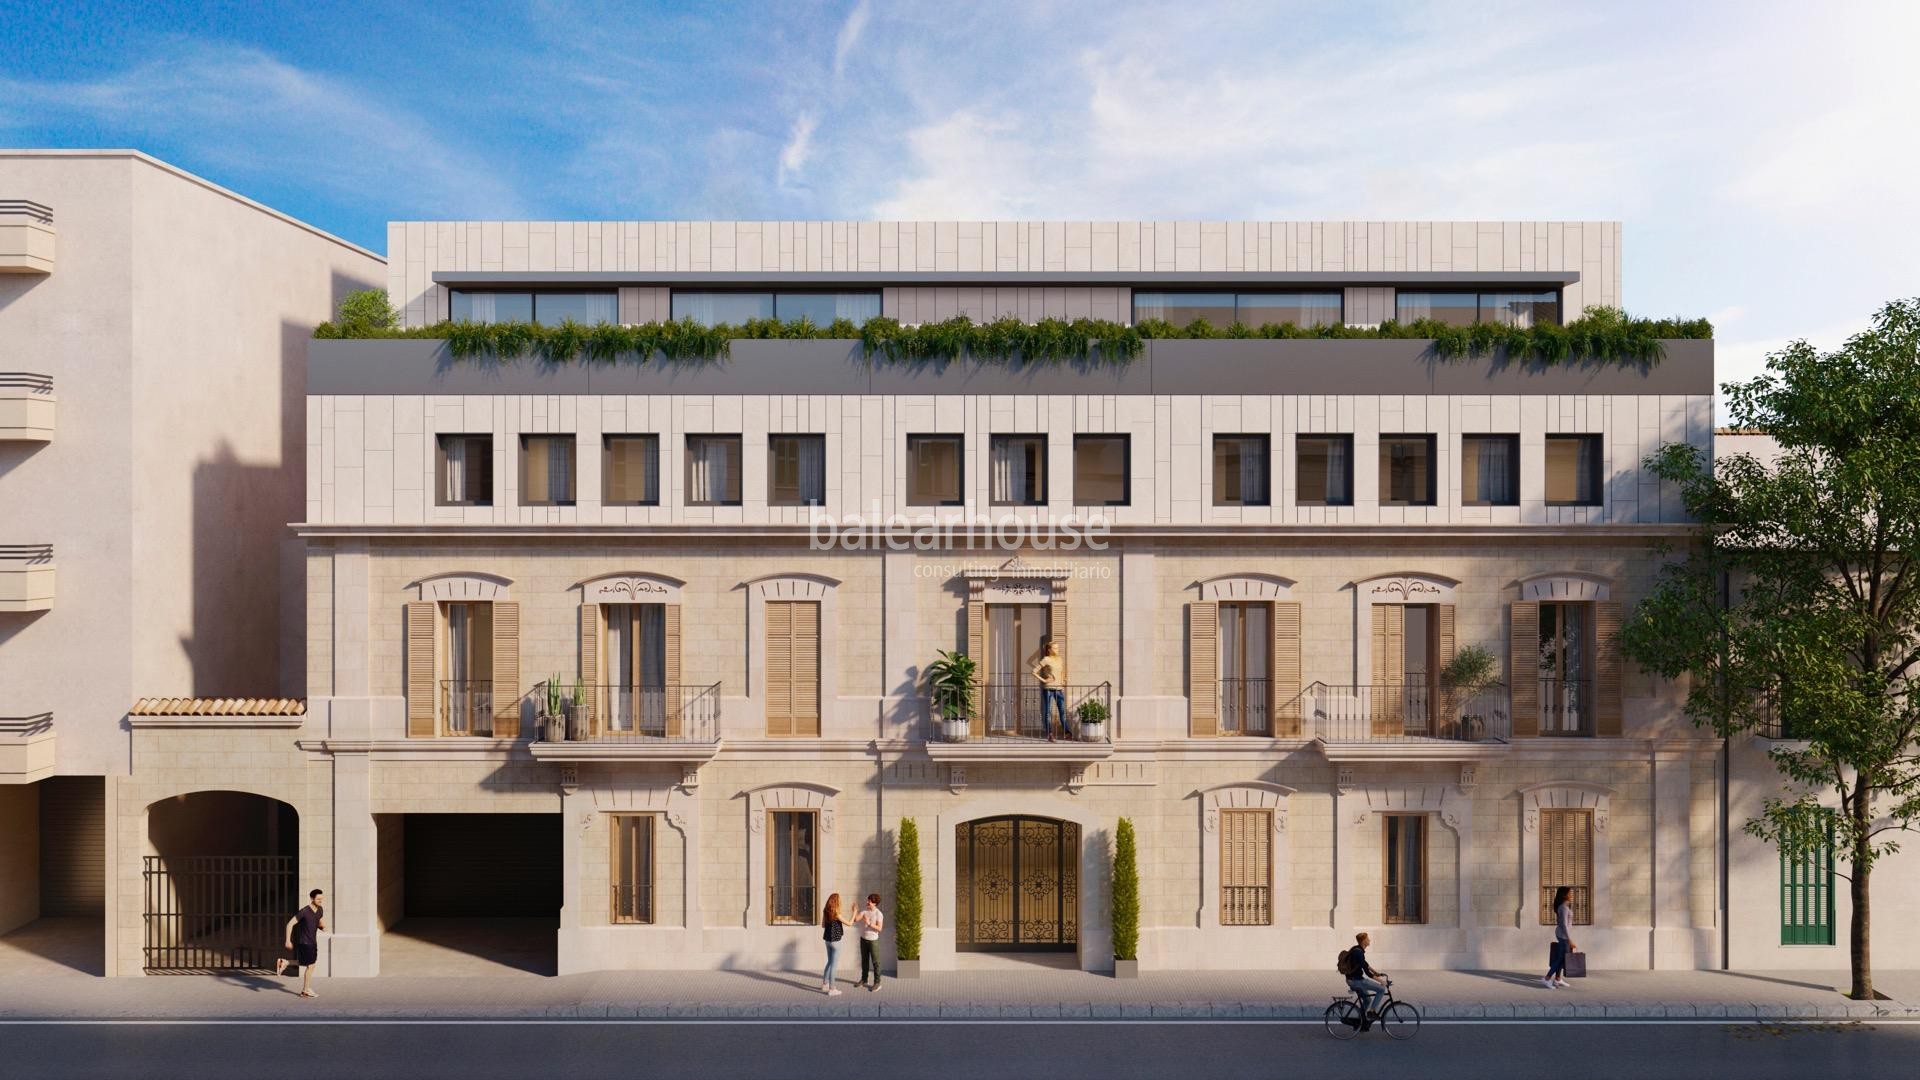 Excepcional proyecto de viviendas con lo mejor del diseño actual en un edificio protegido de Palma